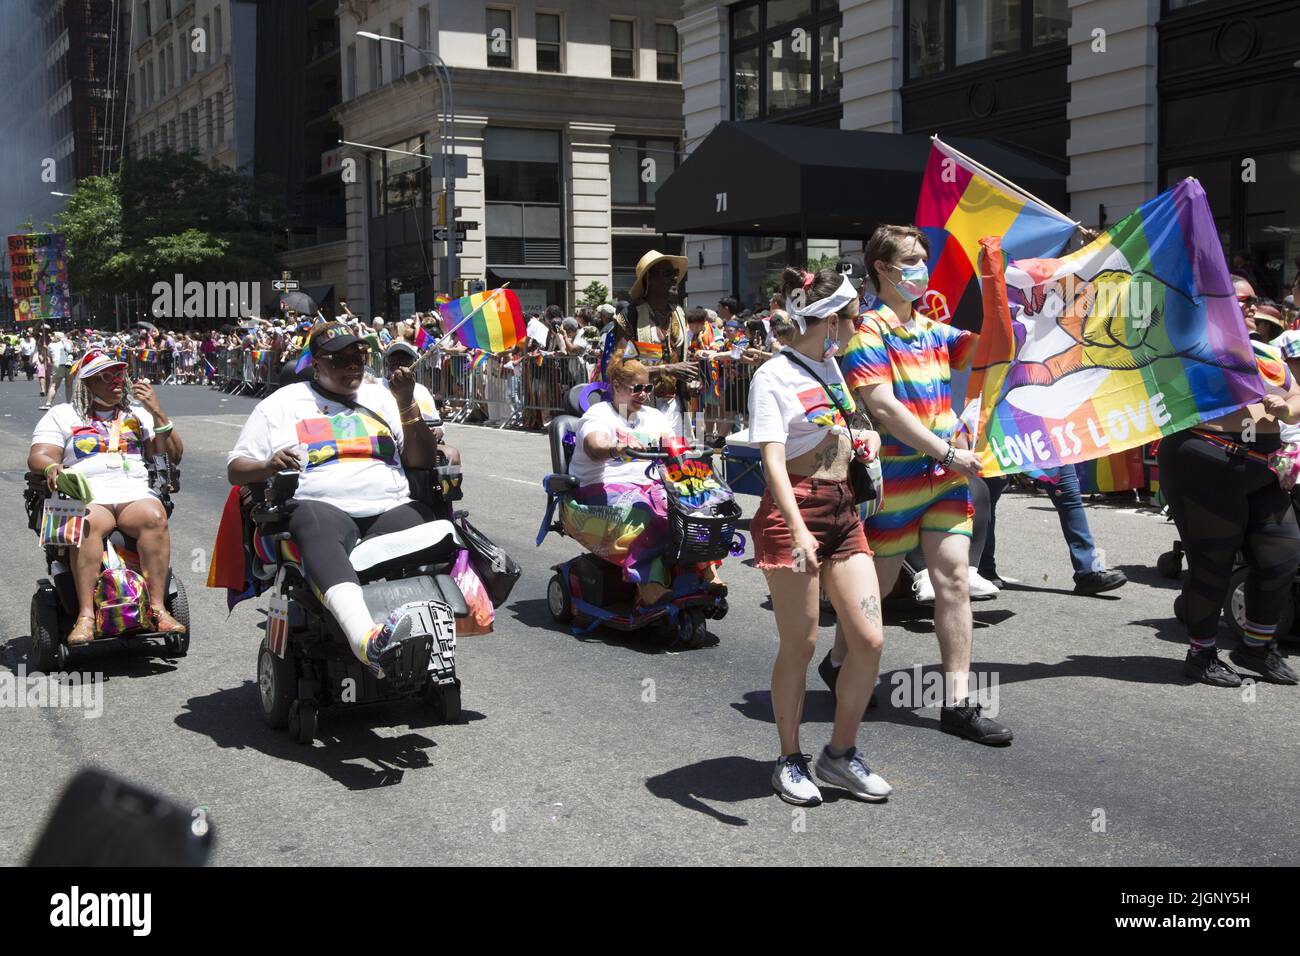 Le défilé annuel gay Pride revient en mars sur 5th Avenue et se termine sur Christopher Street dans Greenwich Village après une pause de 3 ans en raison de la pandémie Covid-19. Les gays handicapés défilent dans le défilé. Banque D'Images